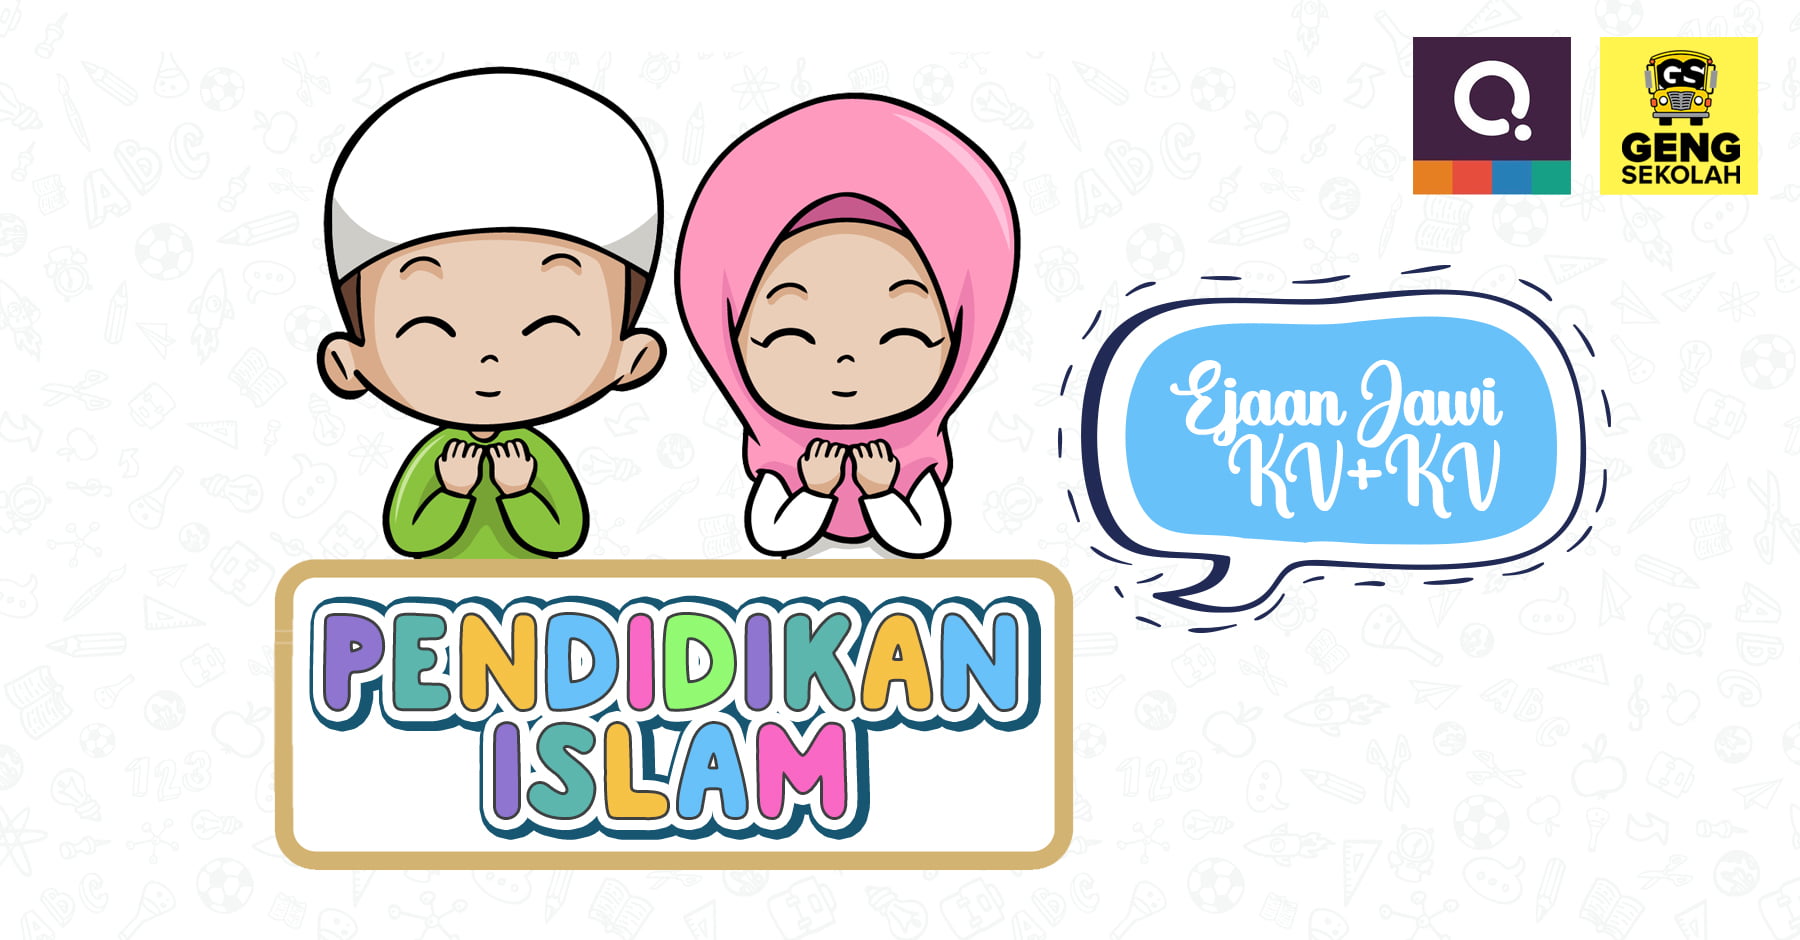 Latihan Pendidikan Islam (Ejaan jawi) – Geng Sekolah